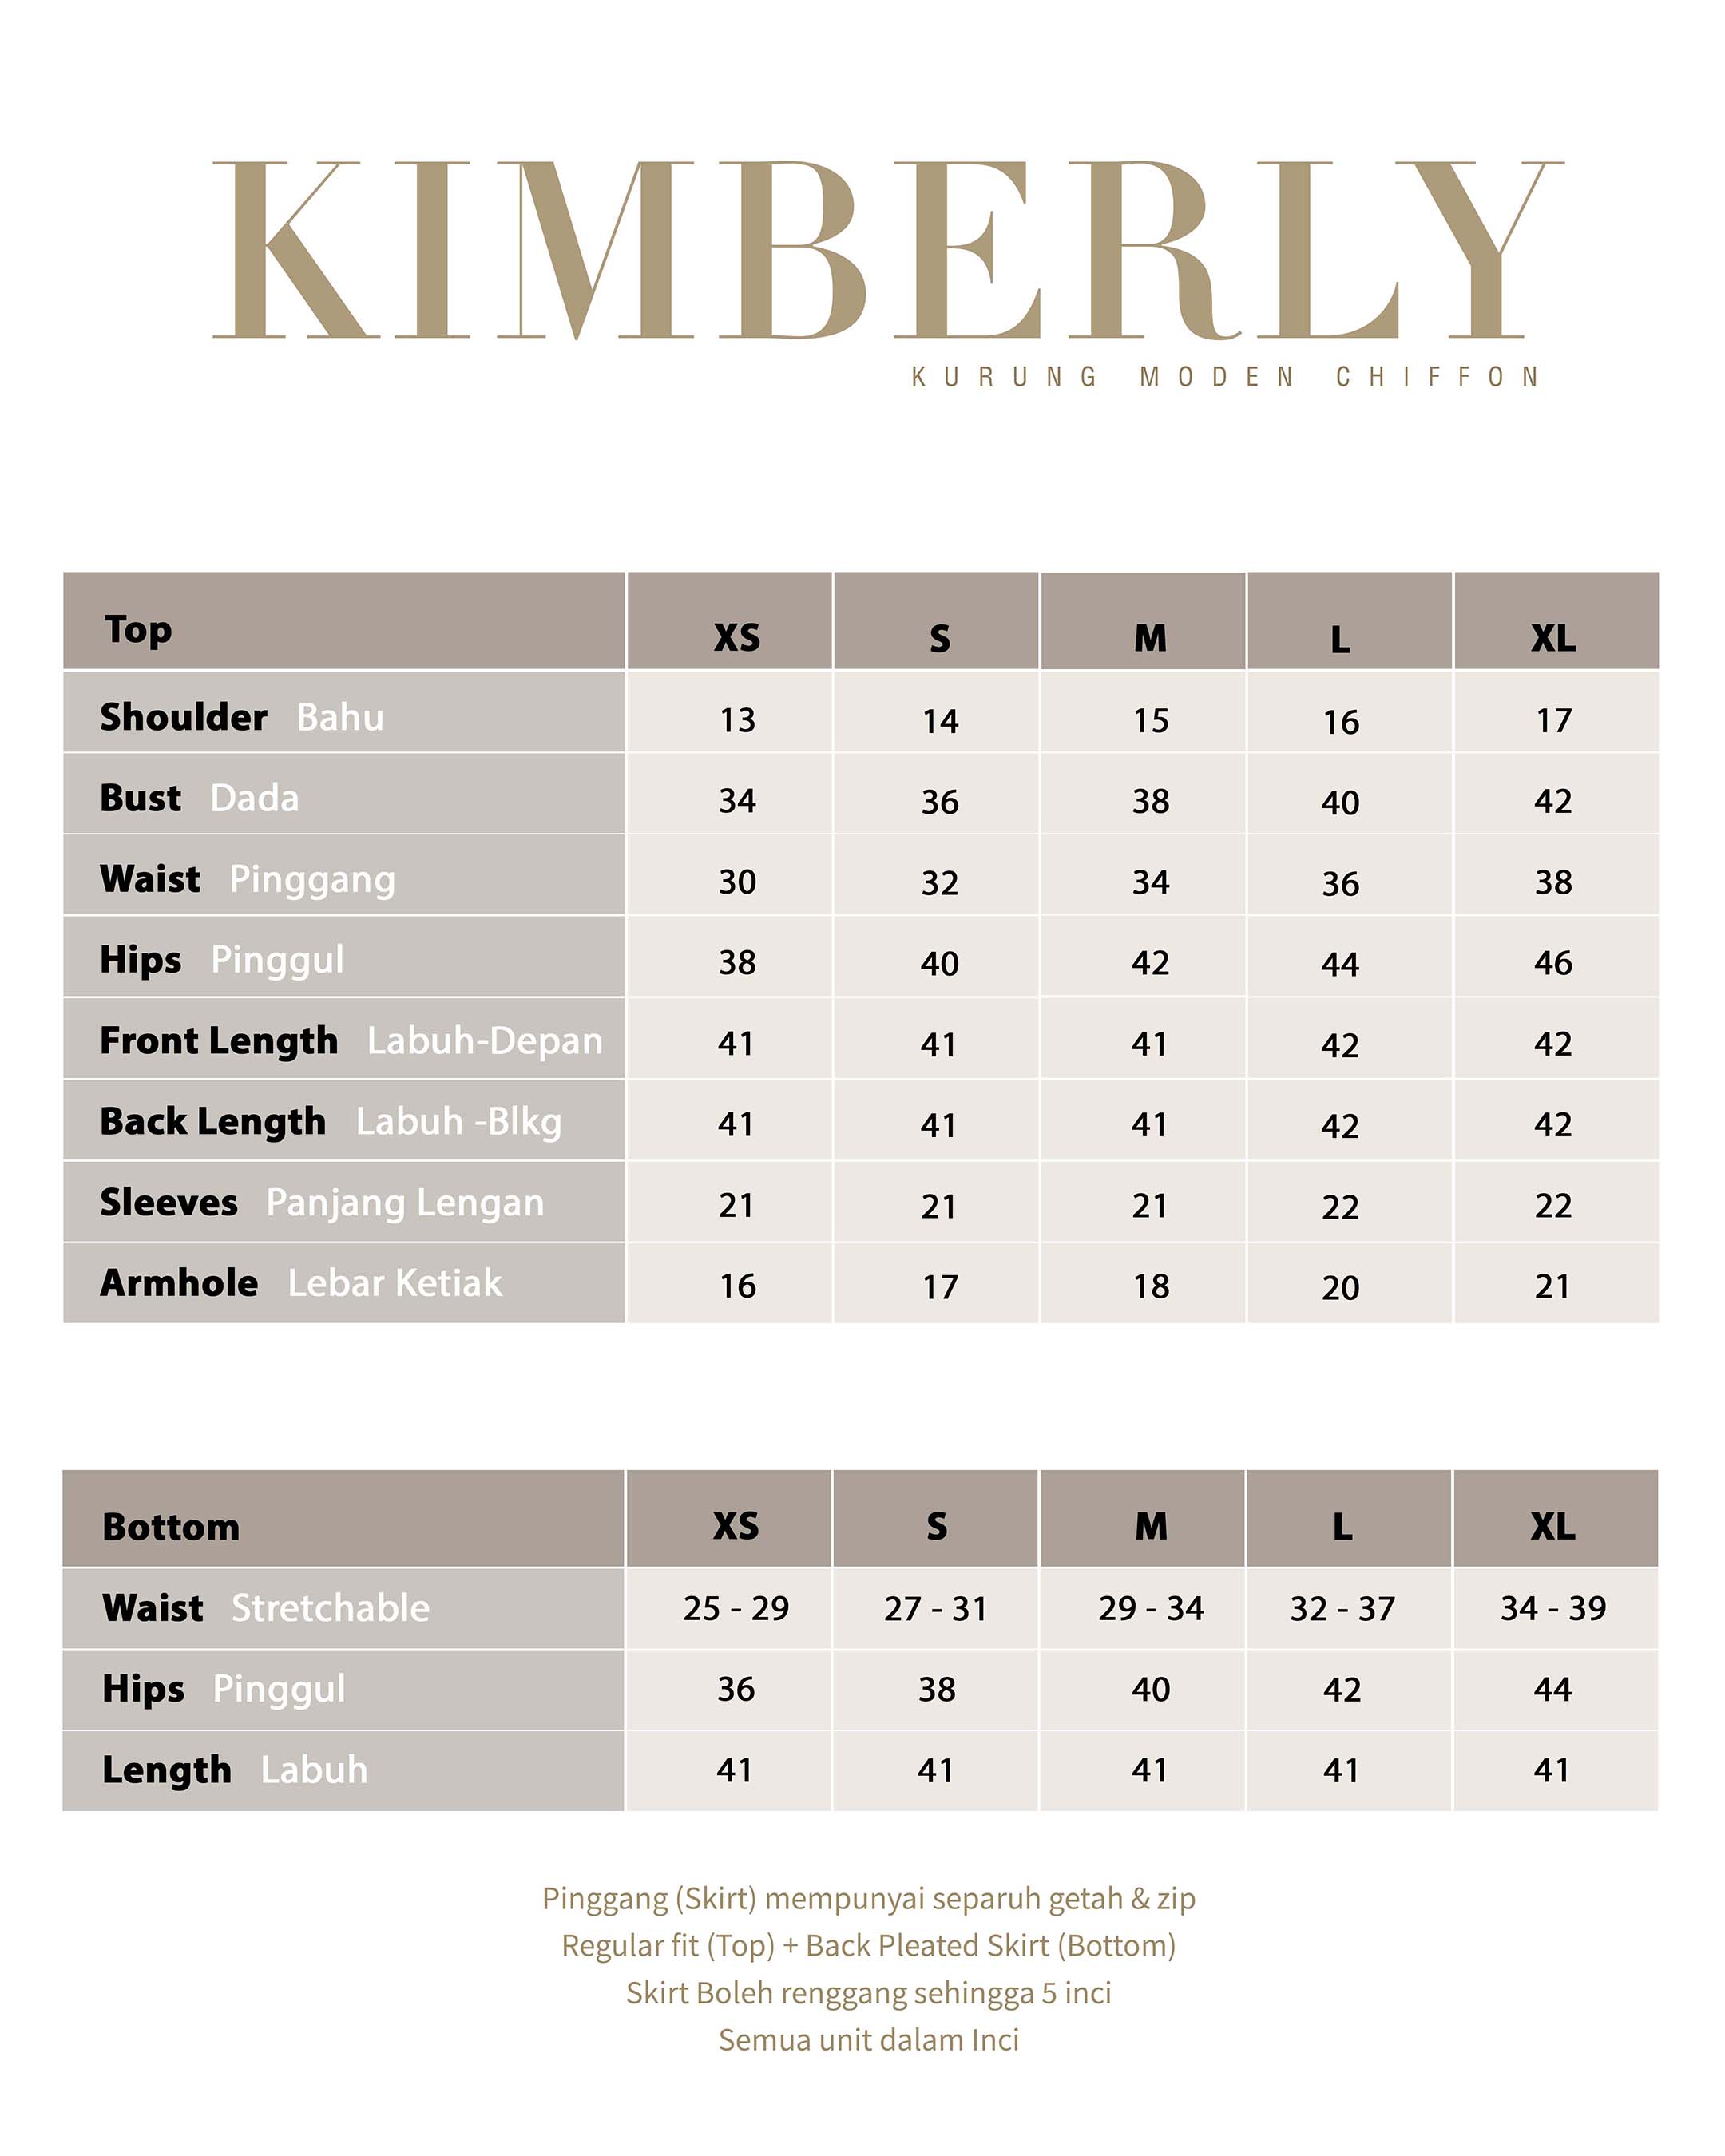 Kimberly - Nude Blush